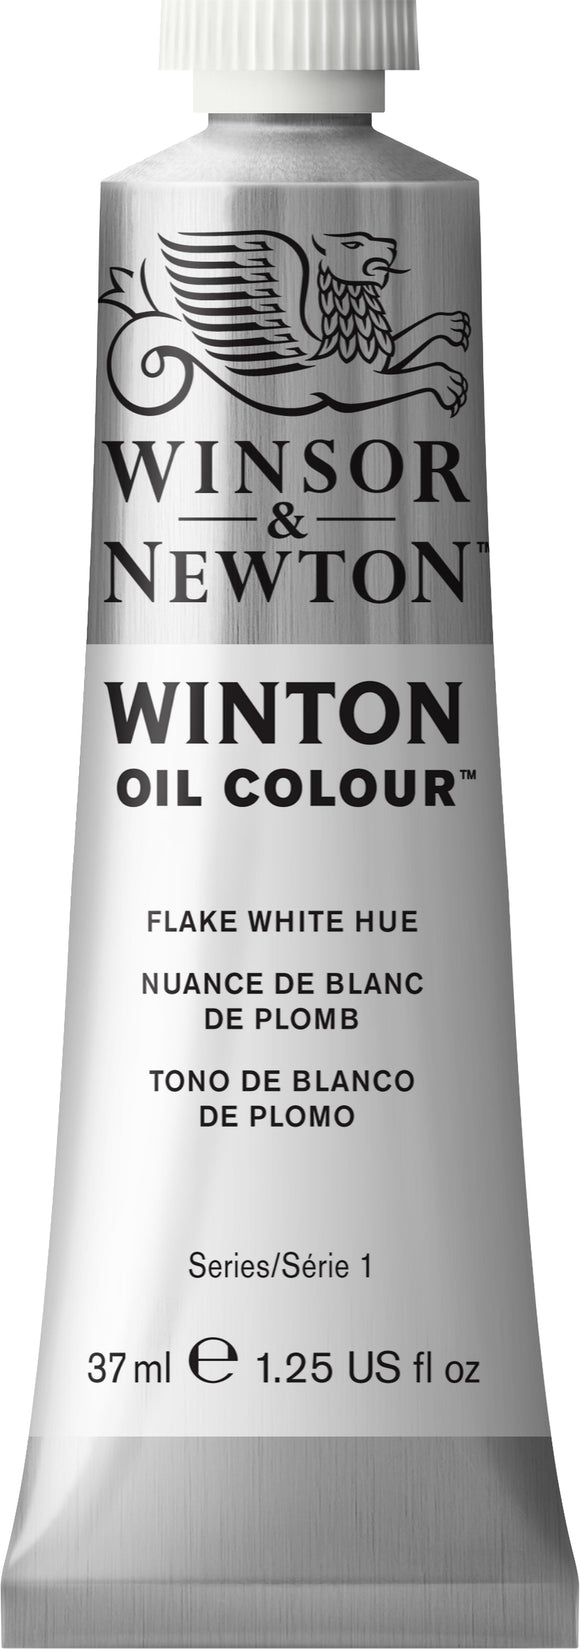 Winsor & Newton Winton Oil Colour Flake White Hue 37Ml